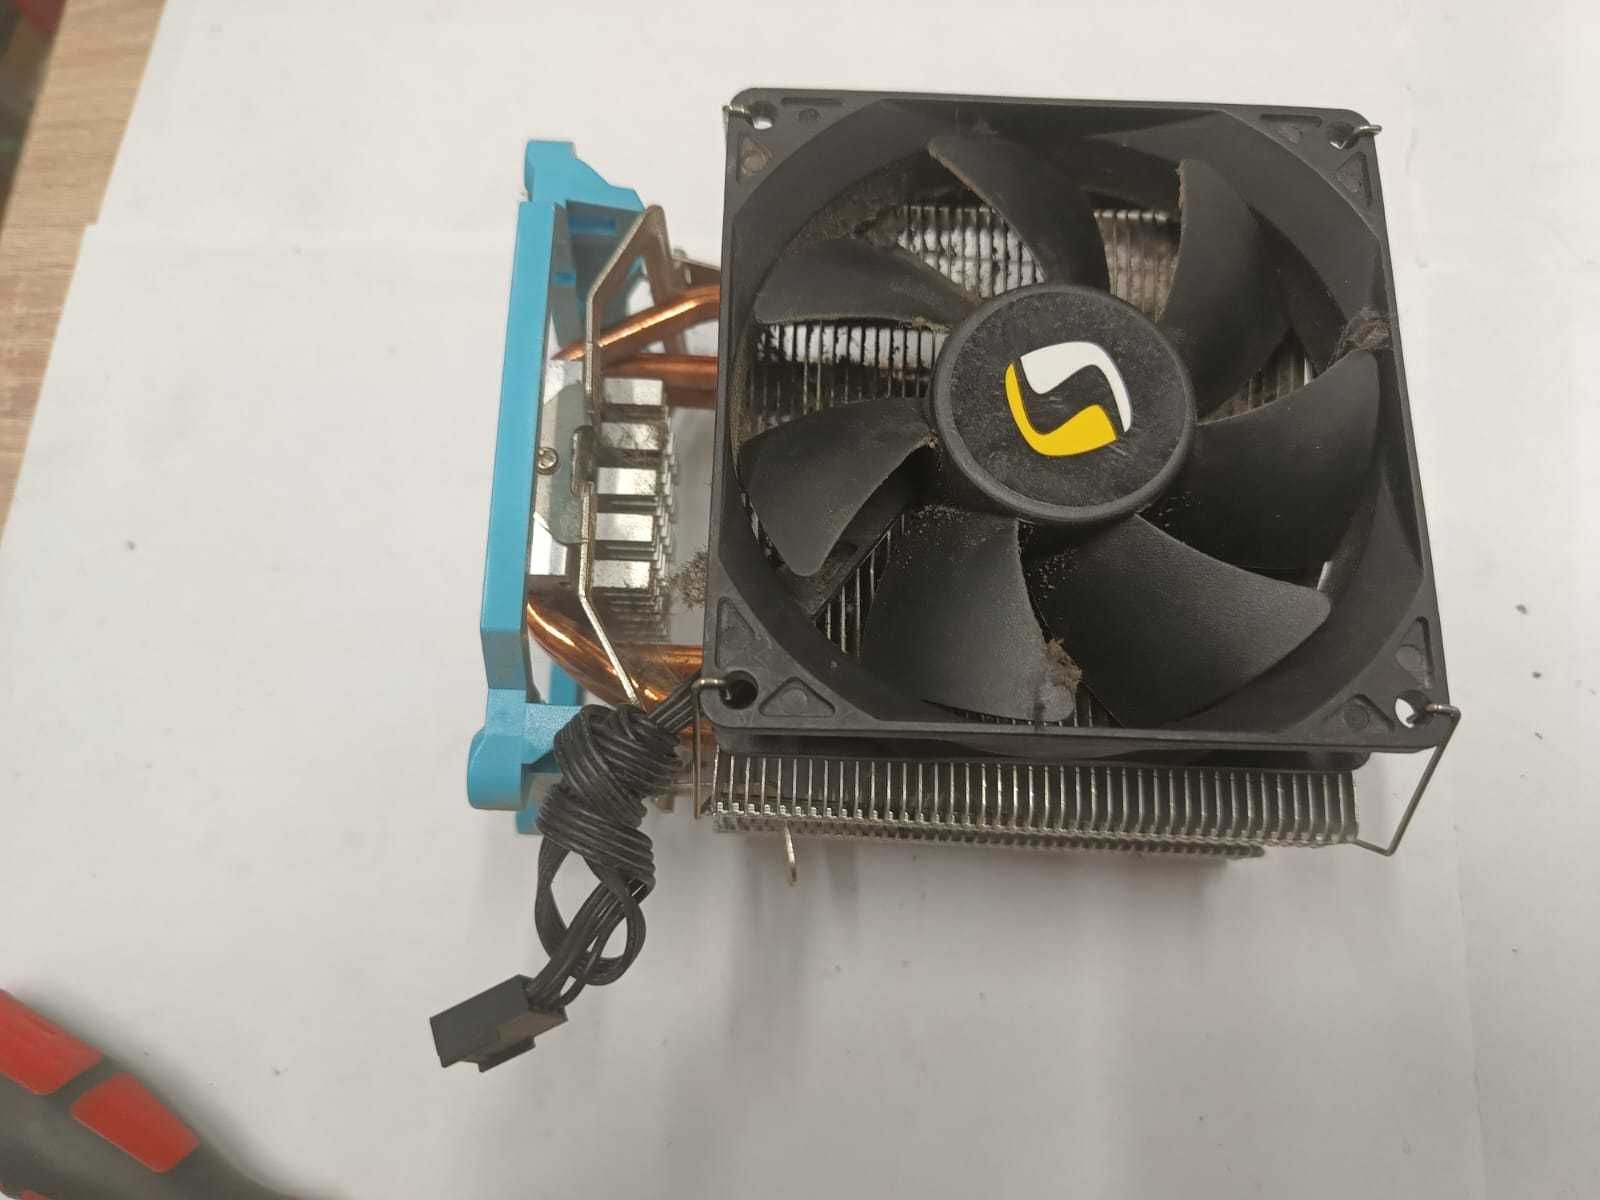 Wentylator z radiatorem do Komputera PC.